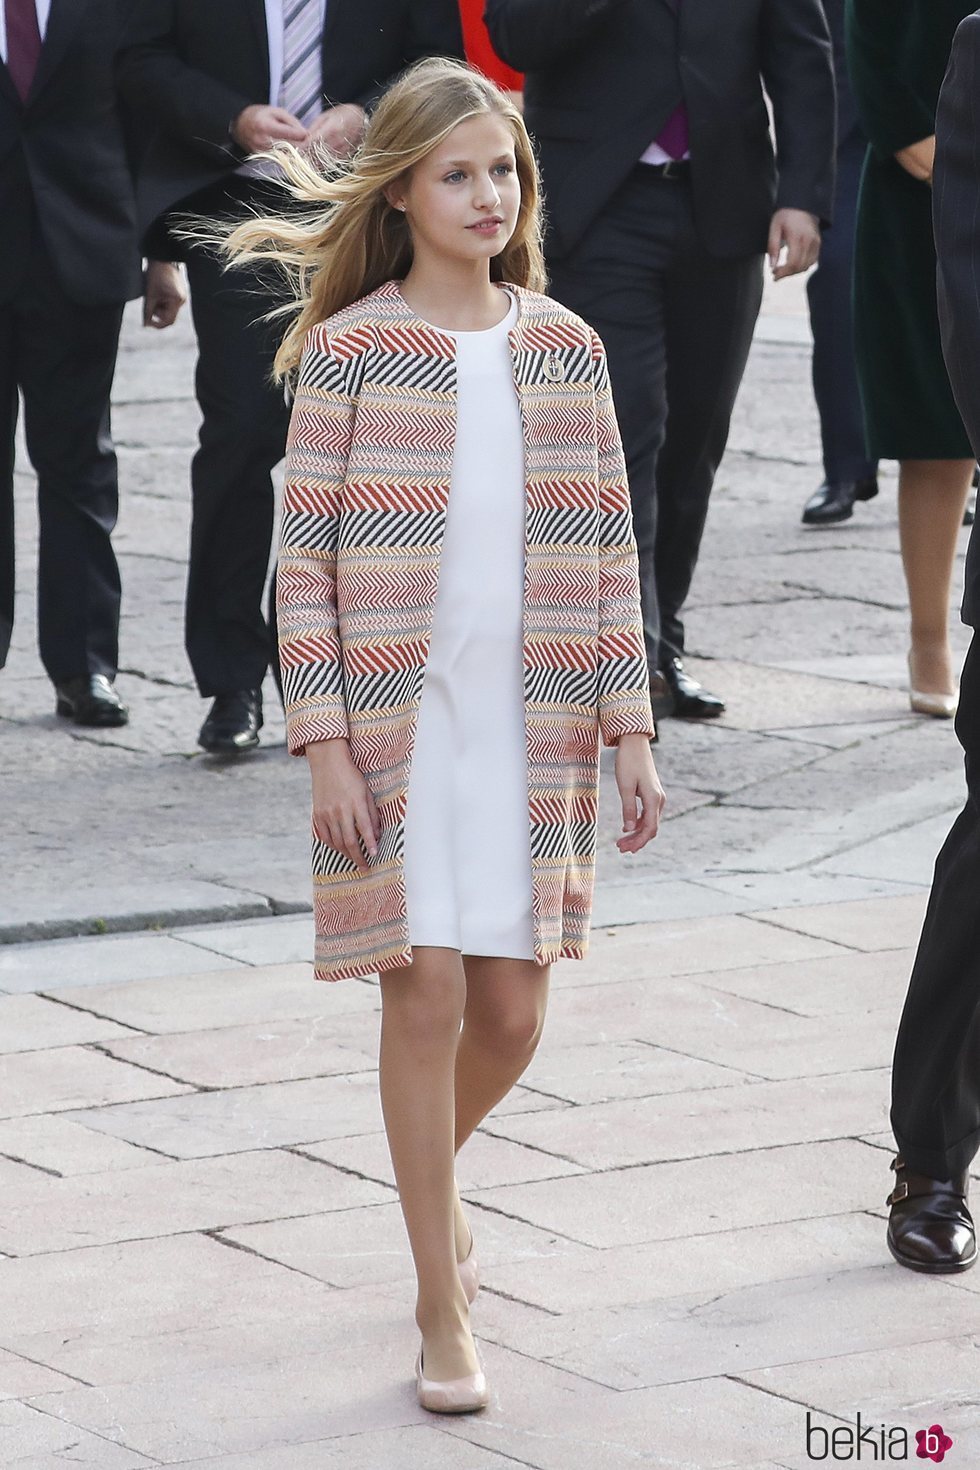 La Princesa Leonor en su visita oficial a Oviedo a su llegada a los actos de entrega de los Premios Princesa de Asturias 2019